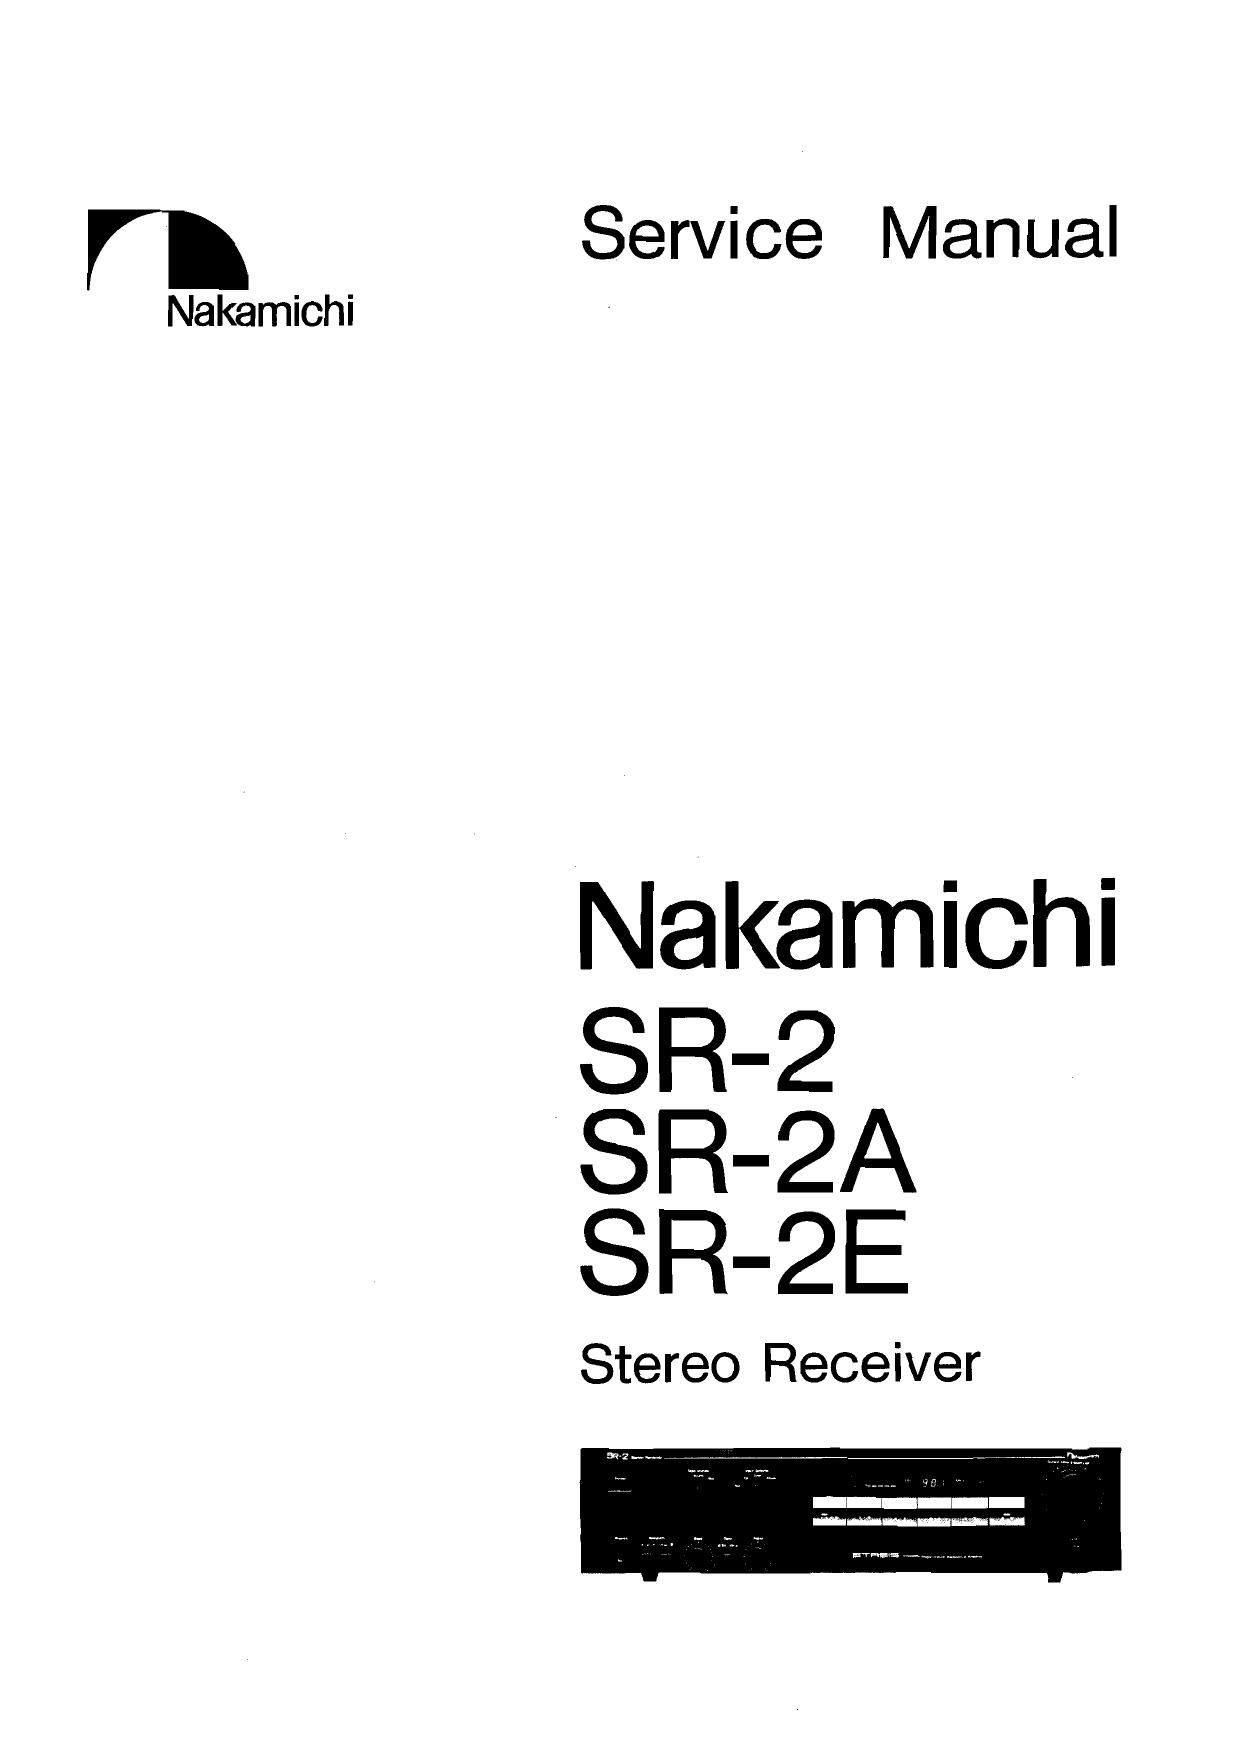 Nakamichi SR 2 Service Manual